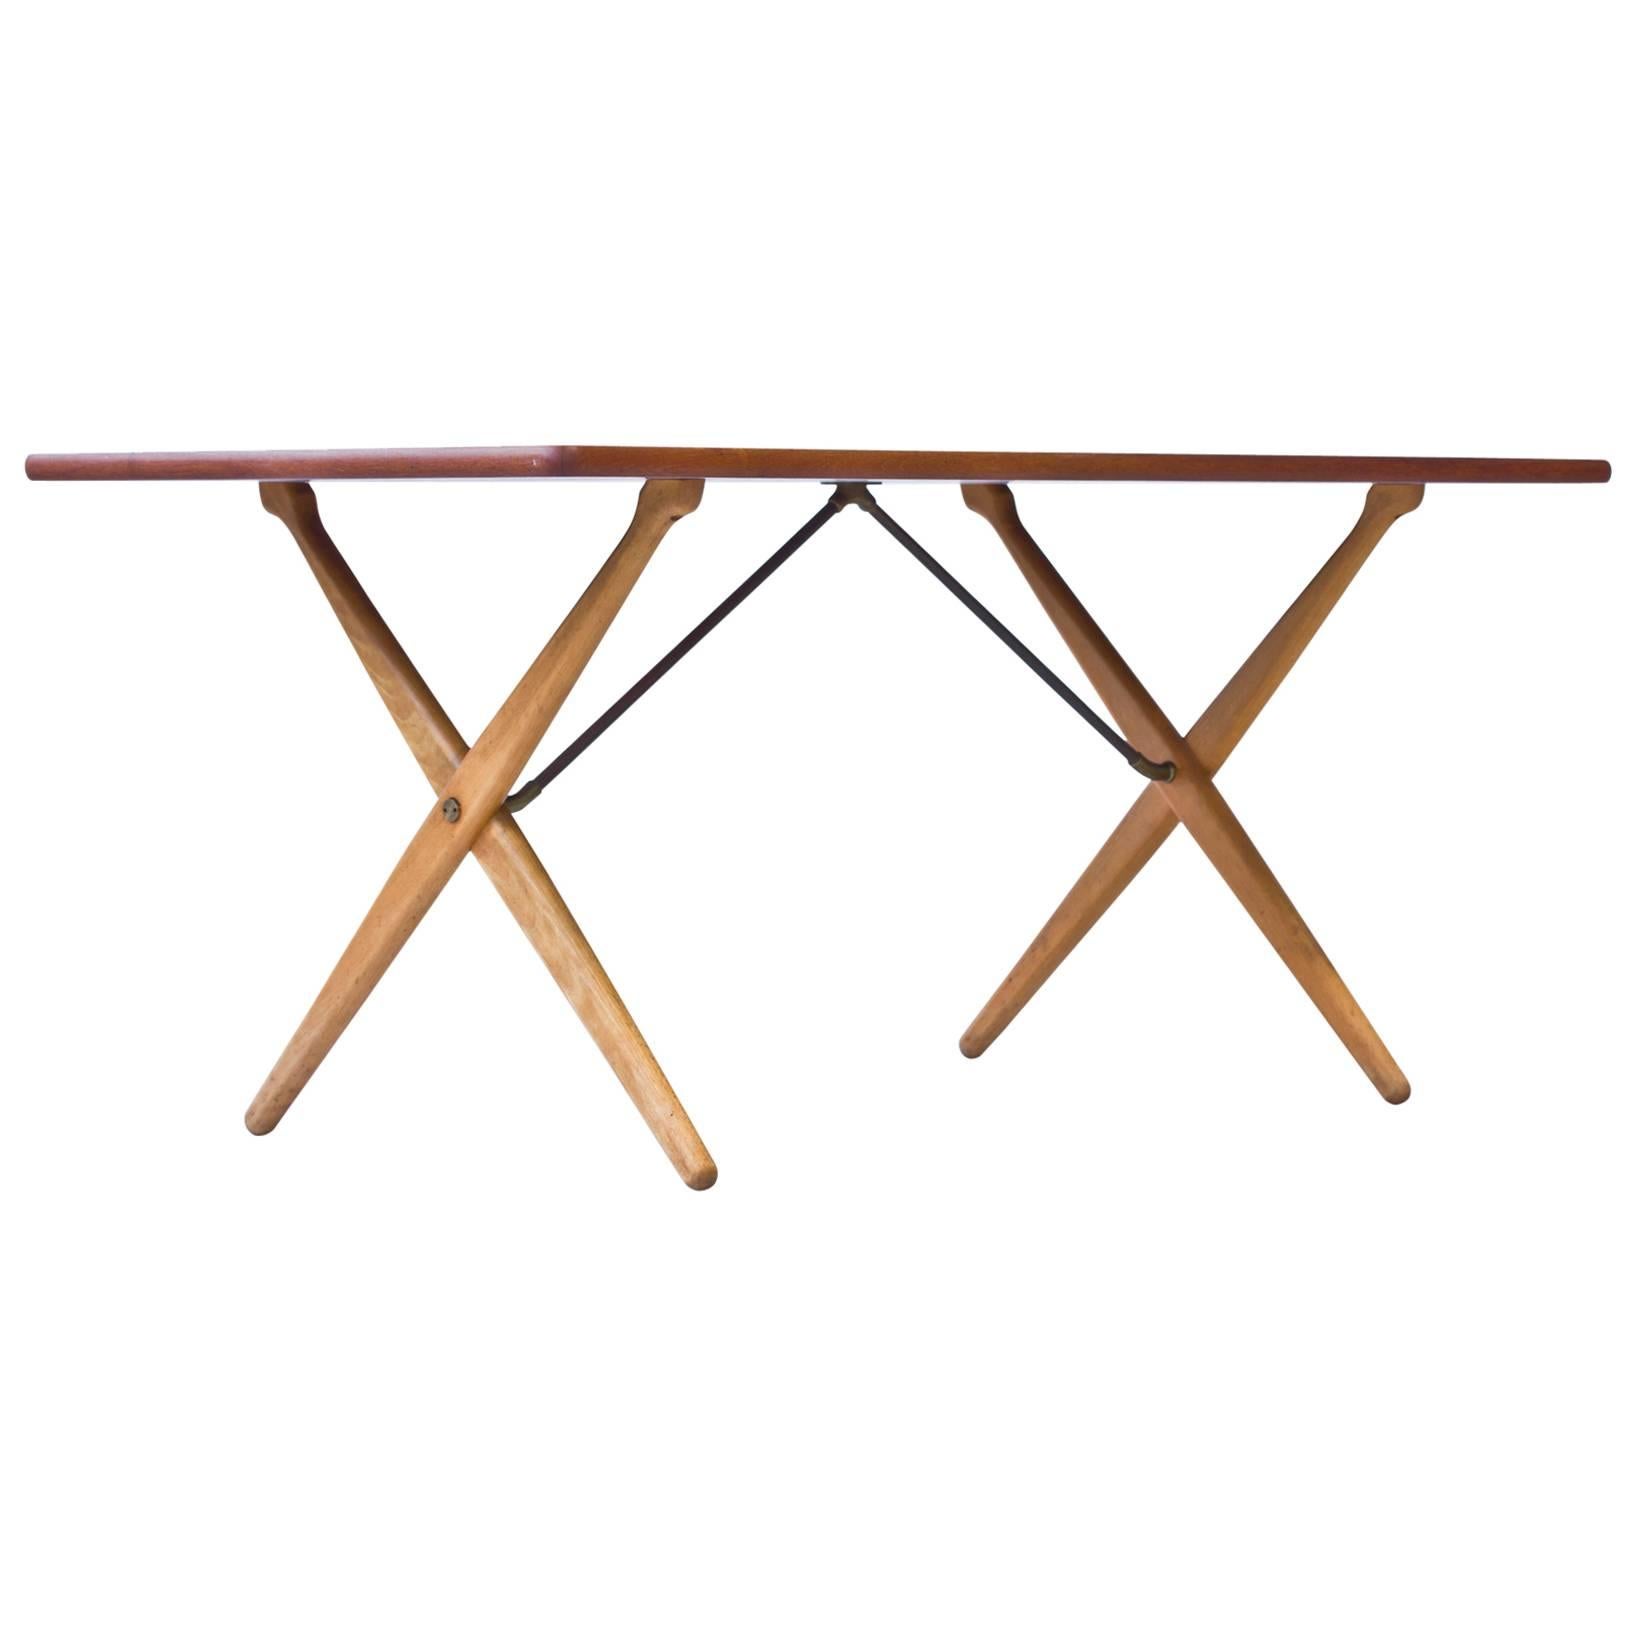 1950s "Cross Leg" Table by Hans J. Wegner